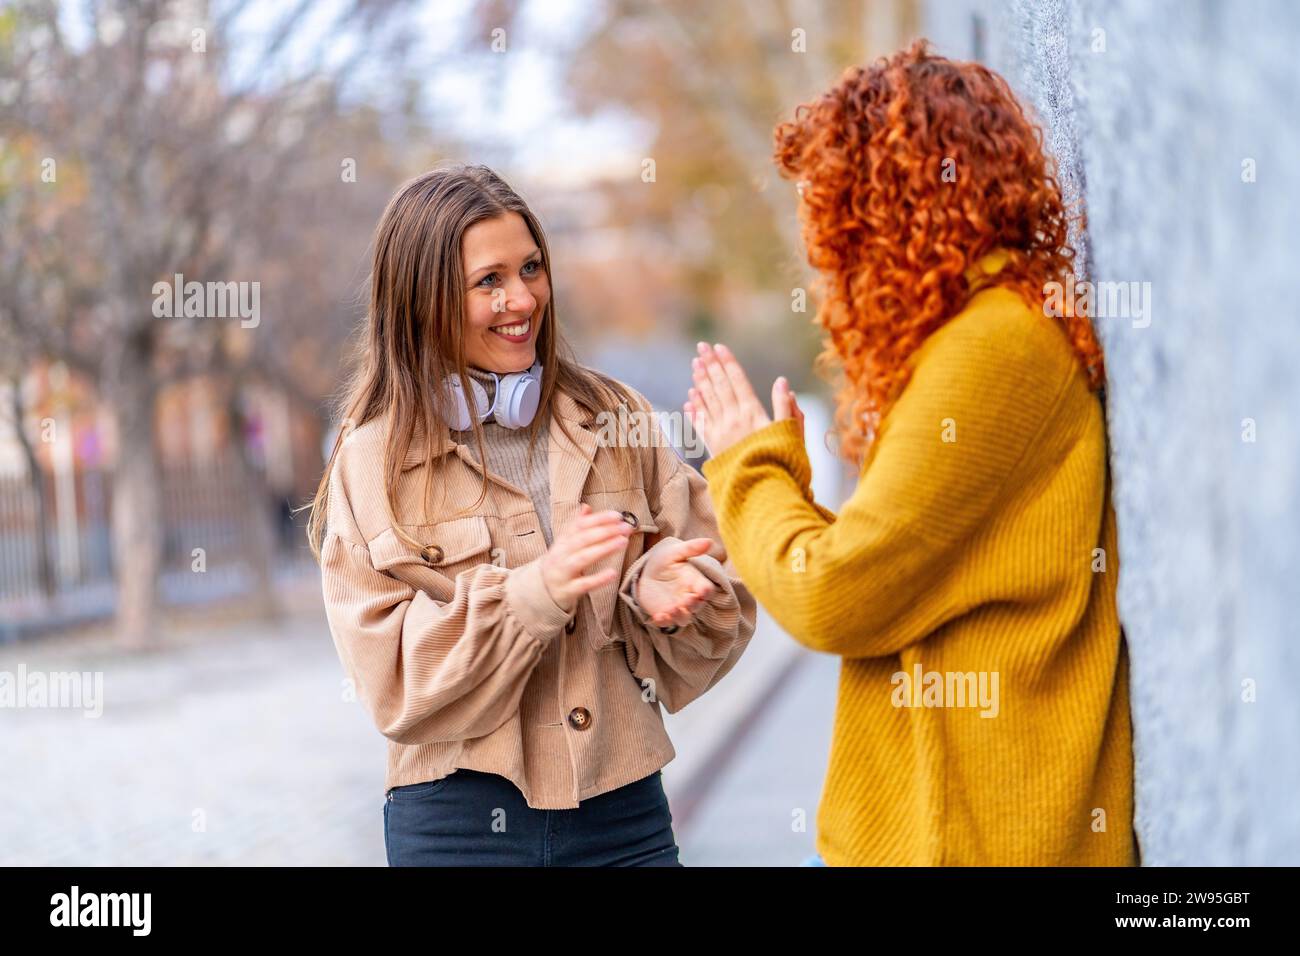 Zwei moderne weibliche Friends, die auf der Straße lächeln und reden Stockfoto